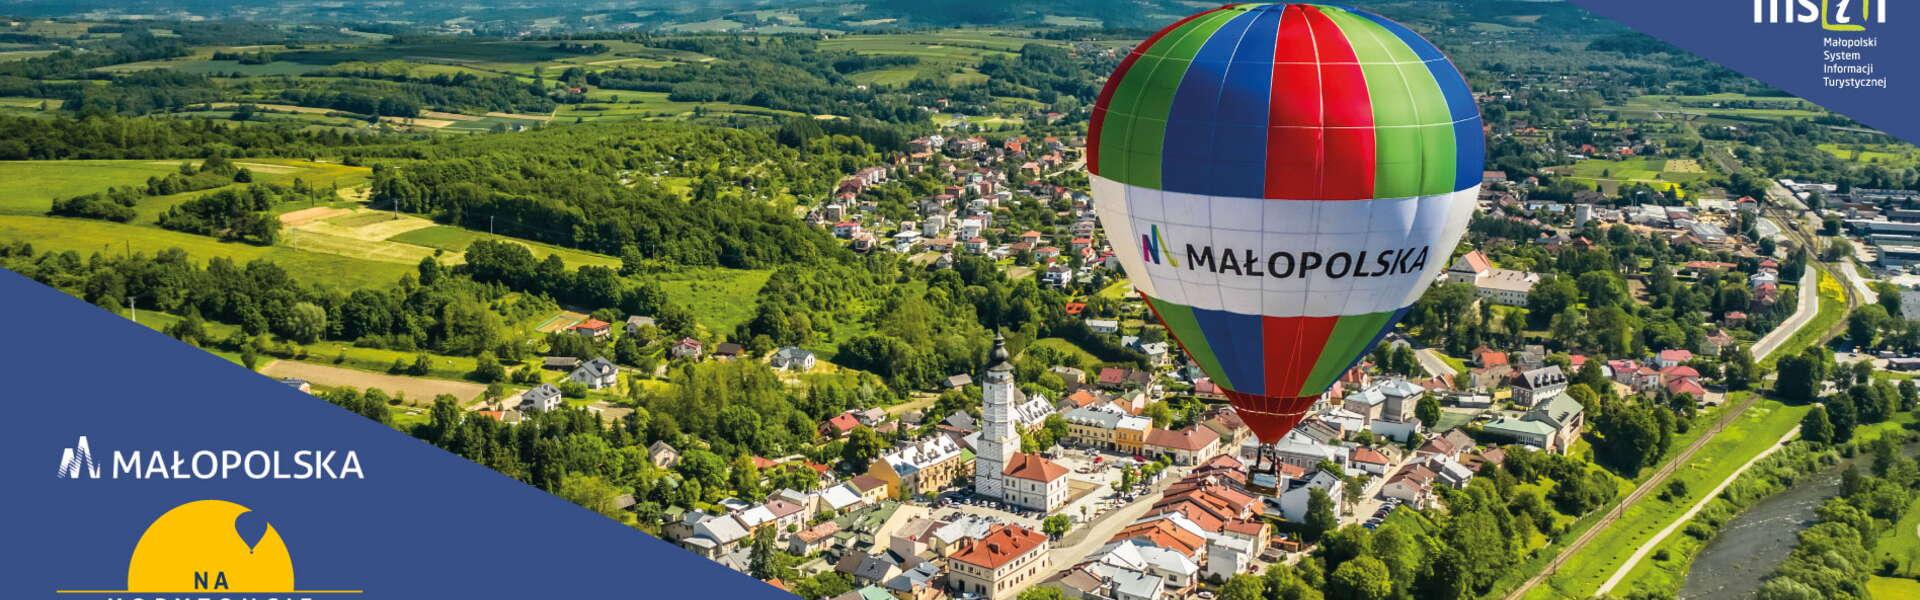 Balon na ogrzane powietrze z logo Małopolski unosi się nad Bieczem